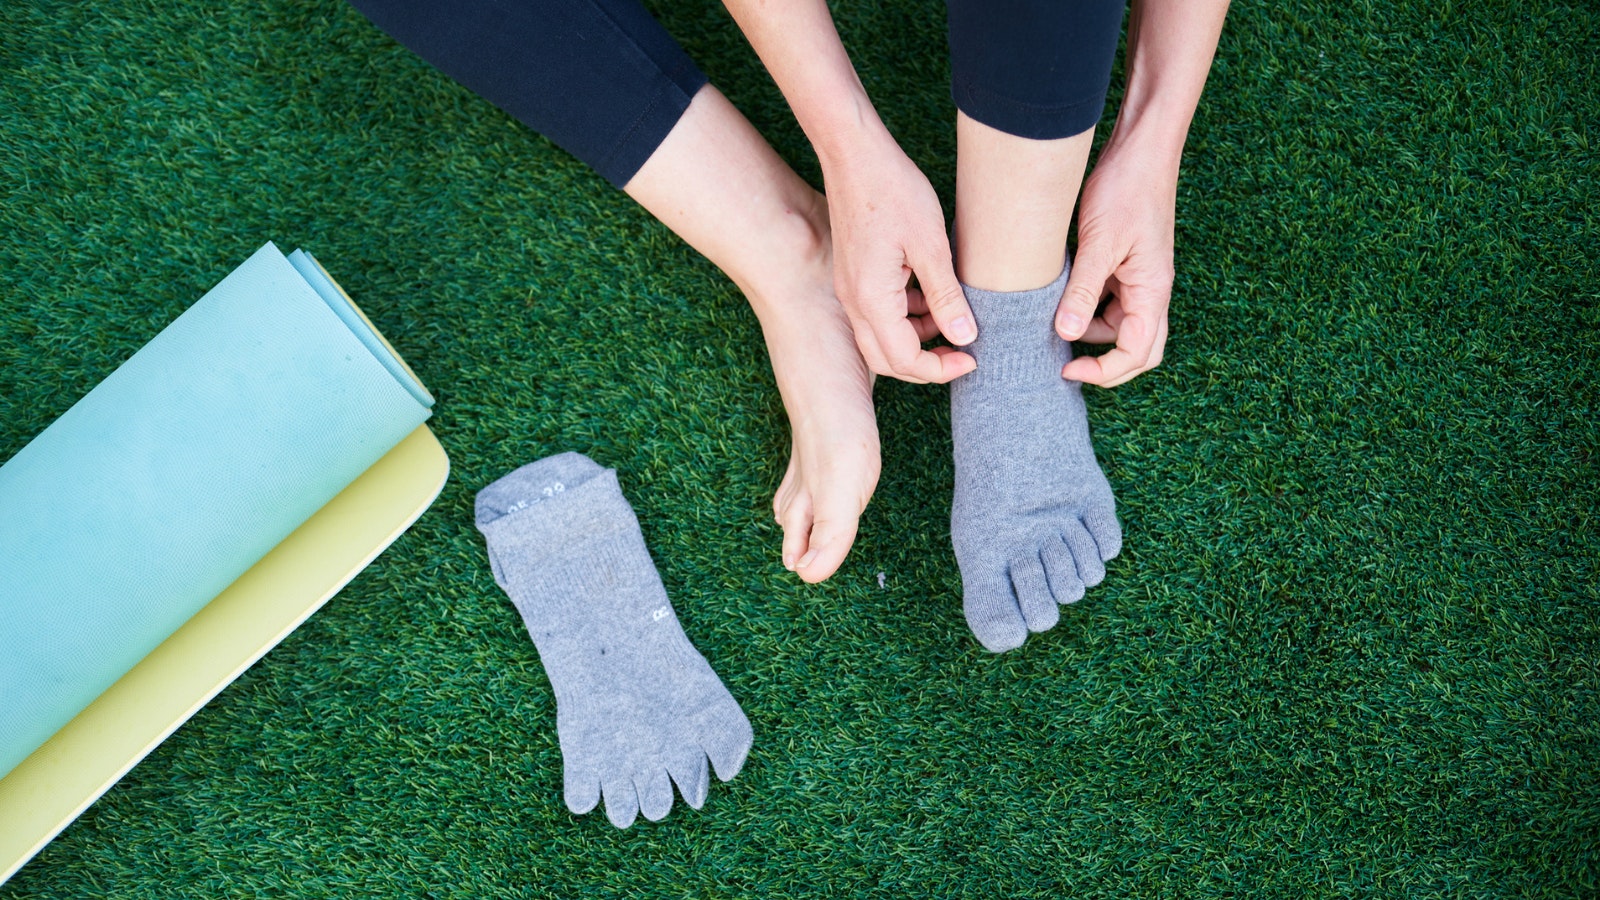 Our performance toeless grip socks provide the barefoot sensation